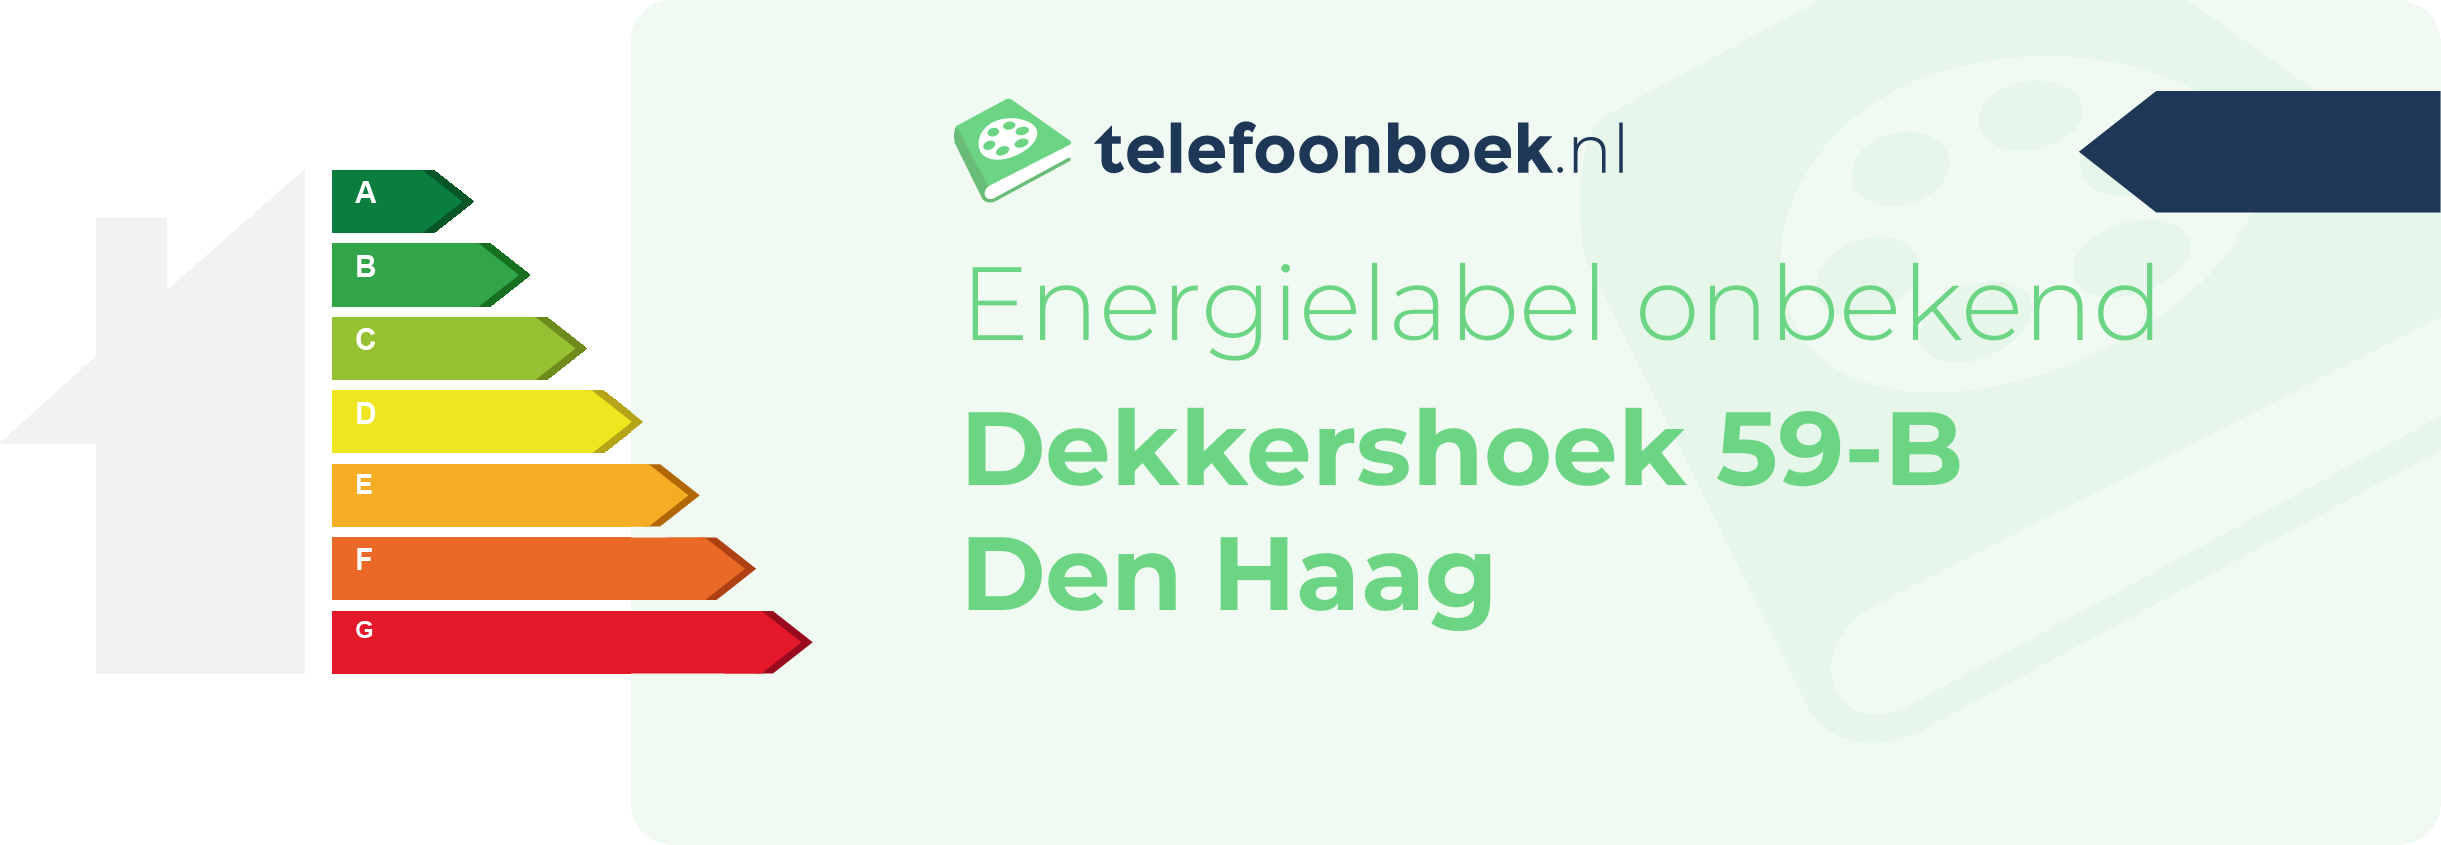 Energielabel Dekkershoek 59-B Den Haag